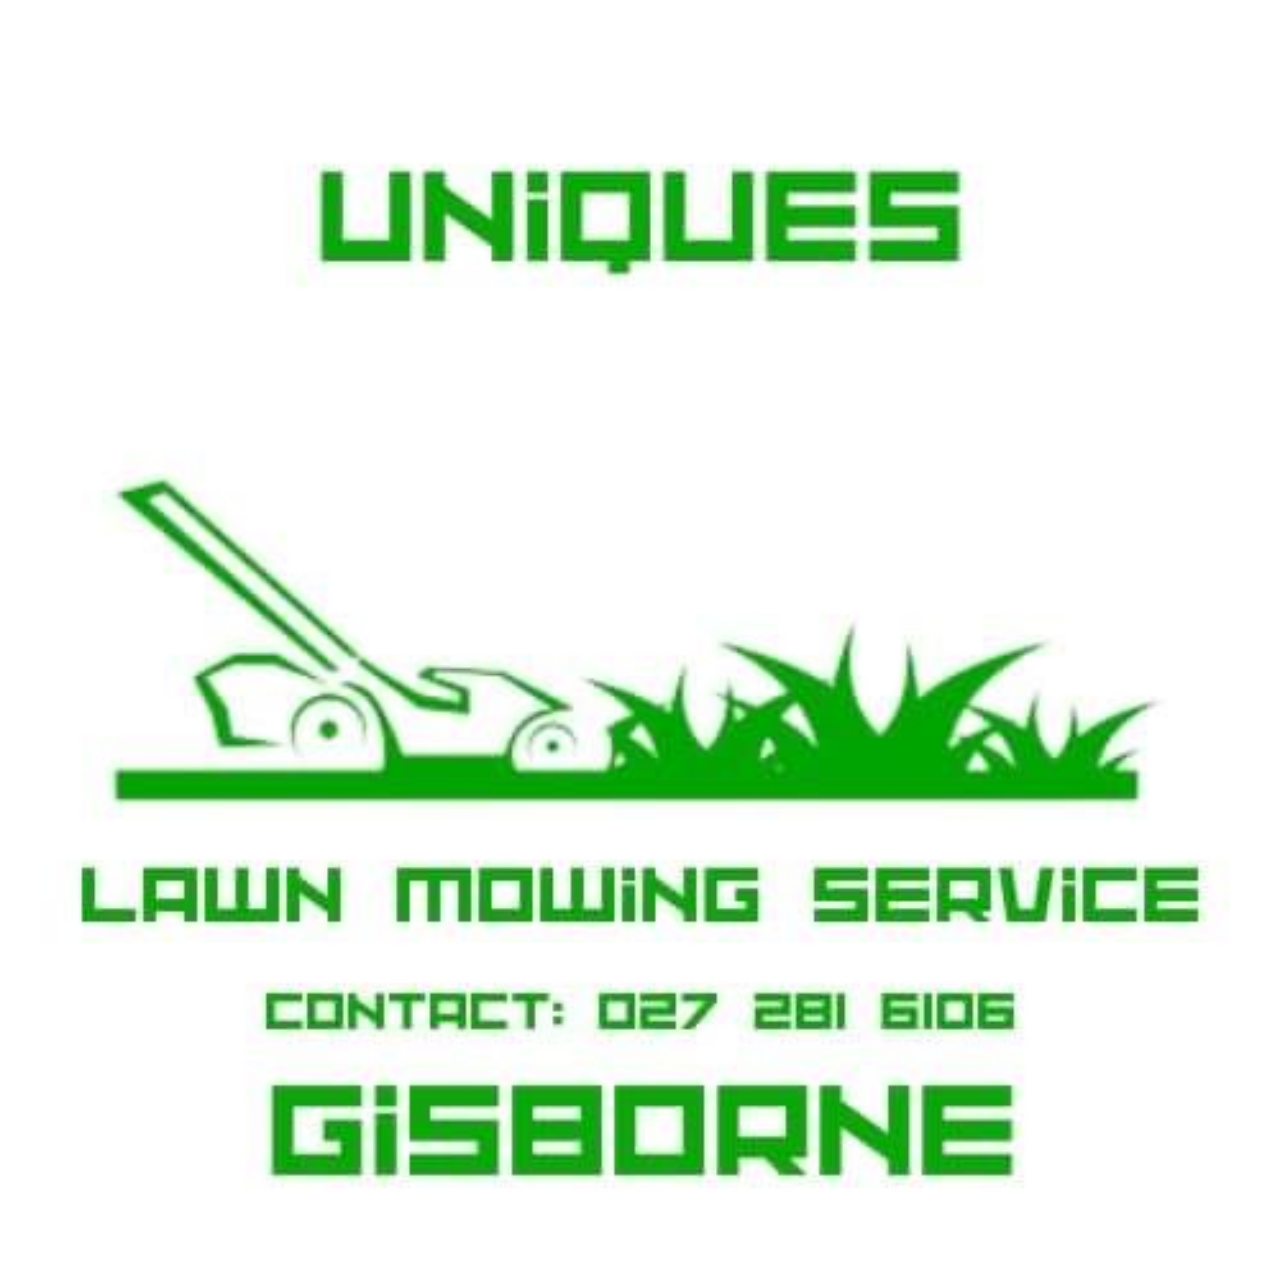 UNIQUE LAWN MOWING SERVICES GISBORNE's web page